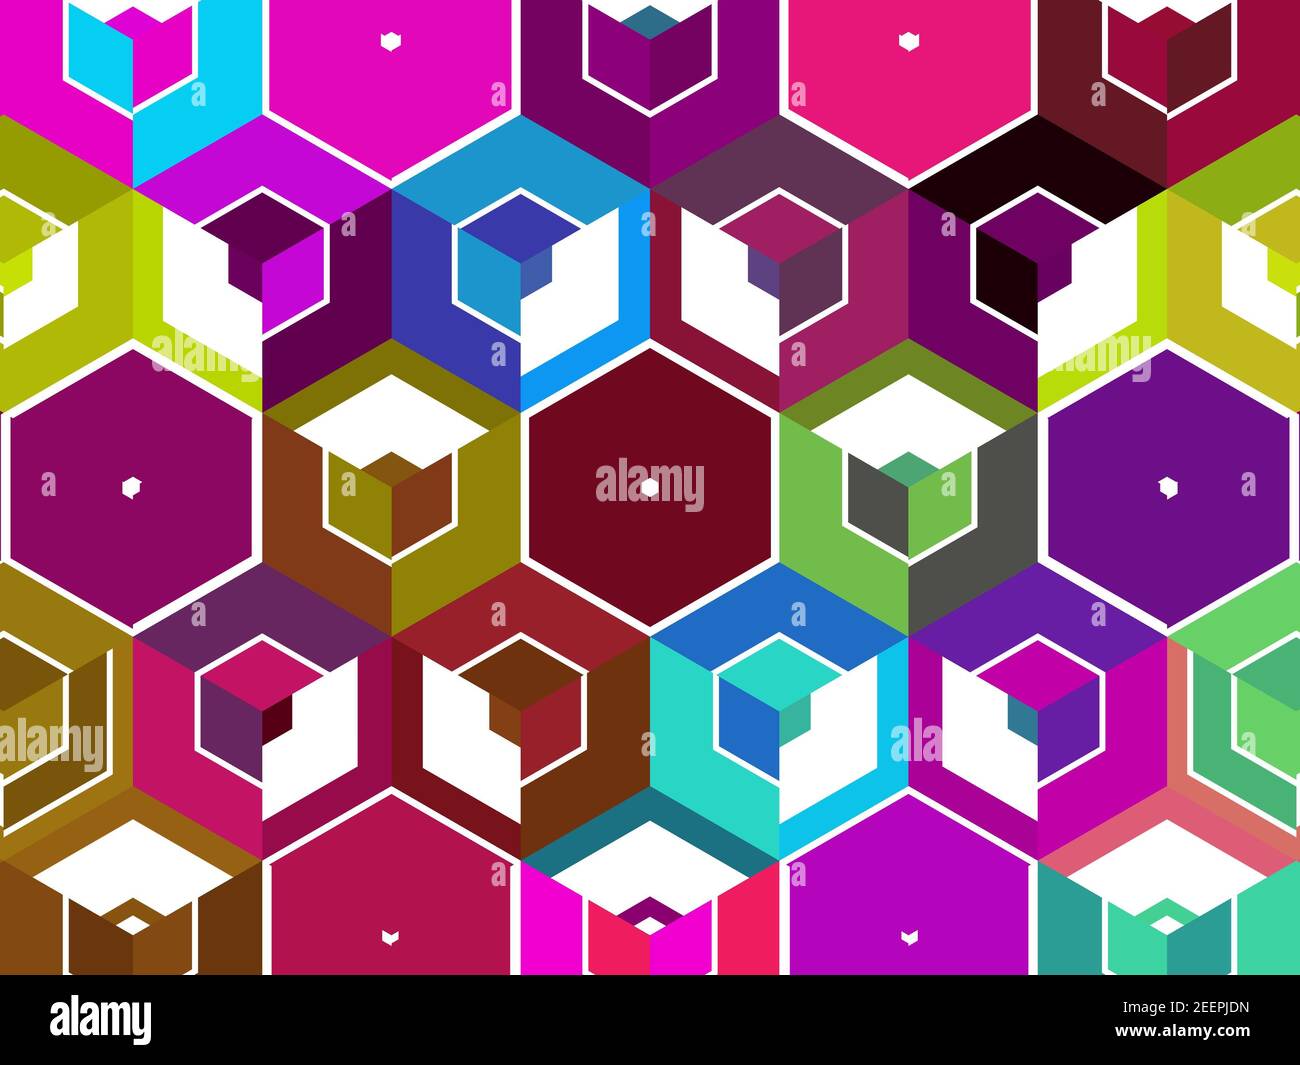 Verbundene Farben hex Würfel plus hexagon zusammengeführte Formen zu einem Bild. Variation von Formen und Farben für verschiedene Projekte. Stockfoto